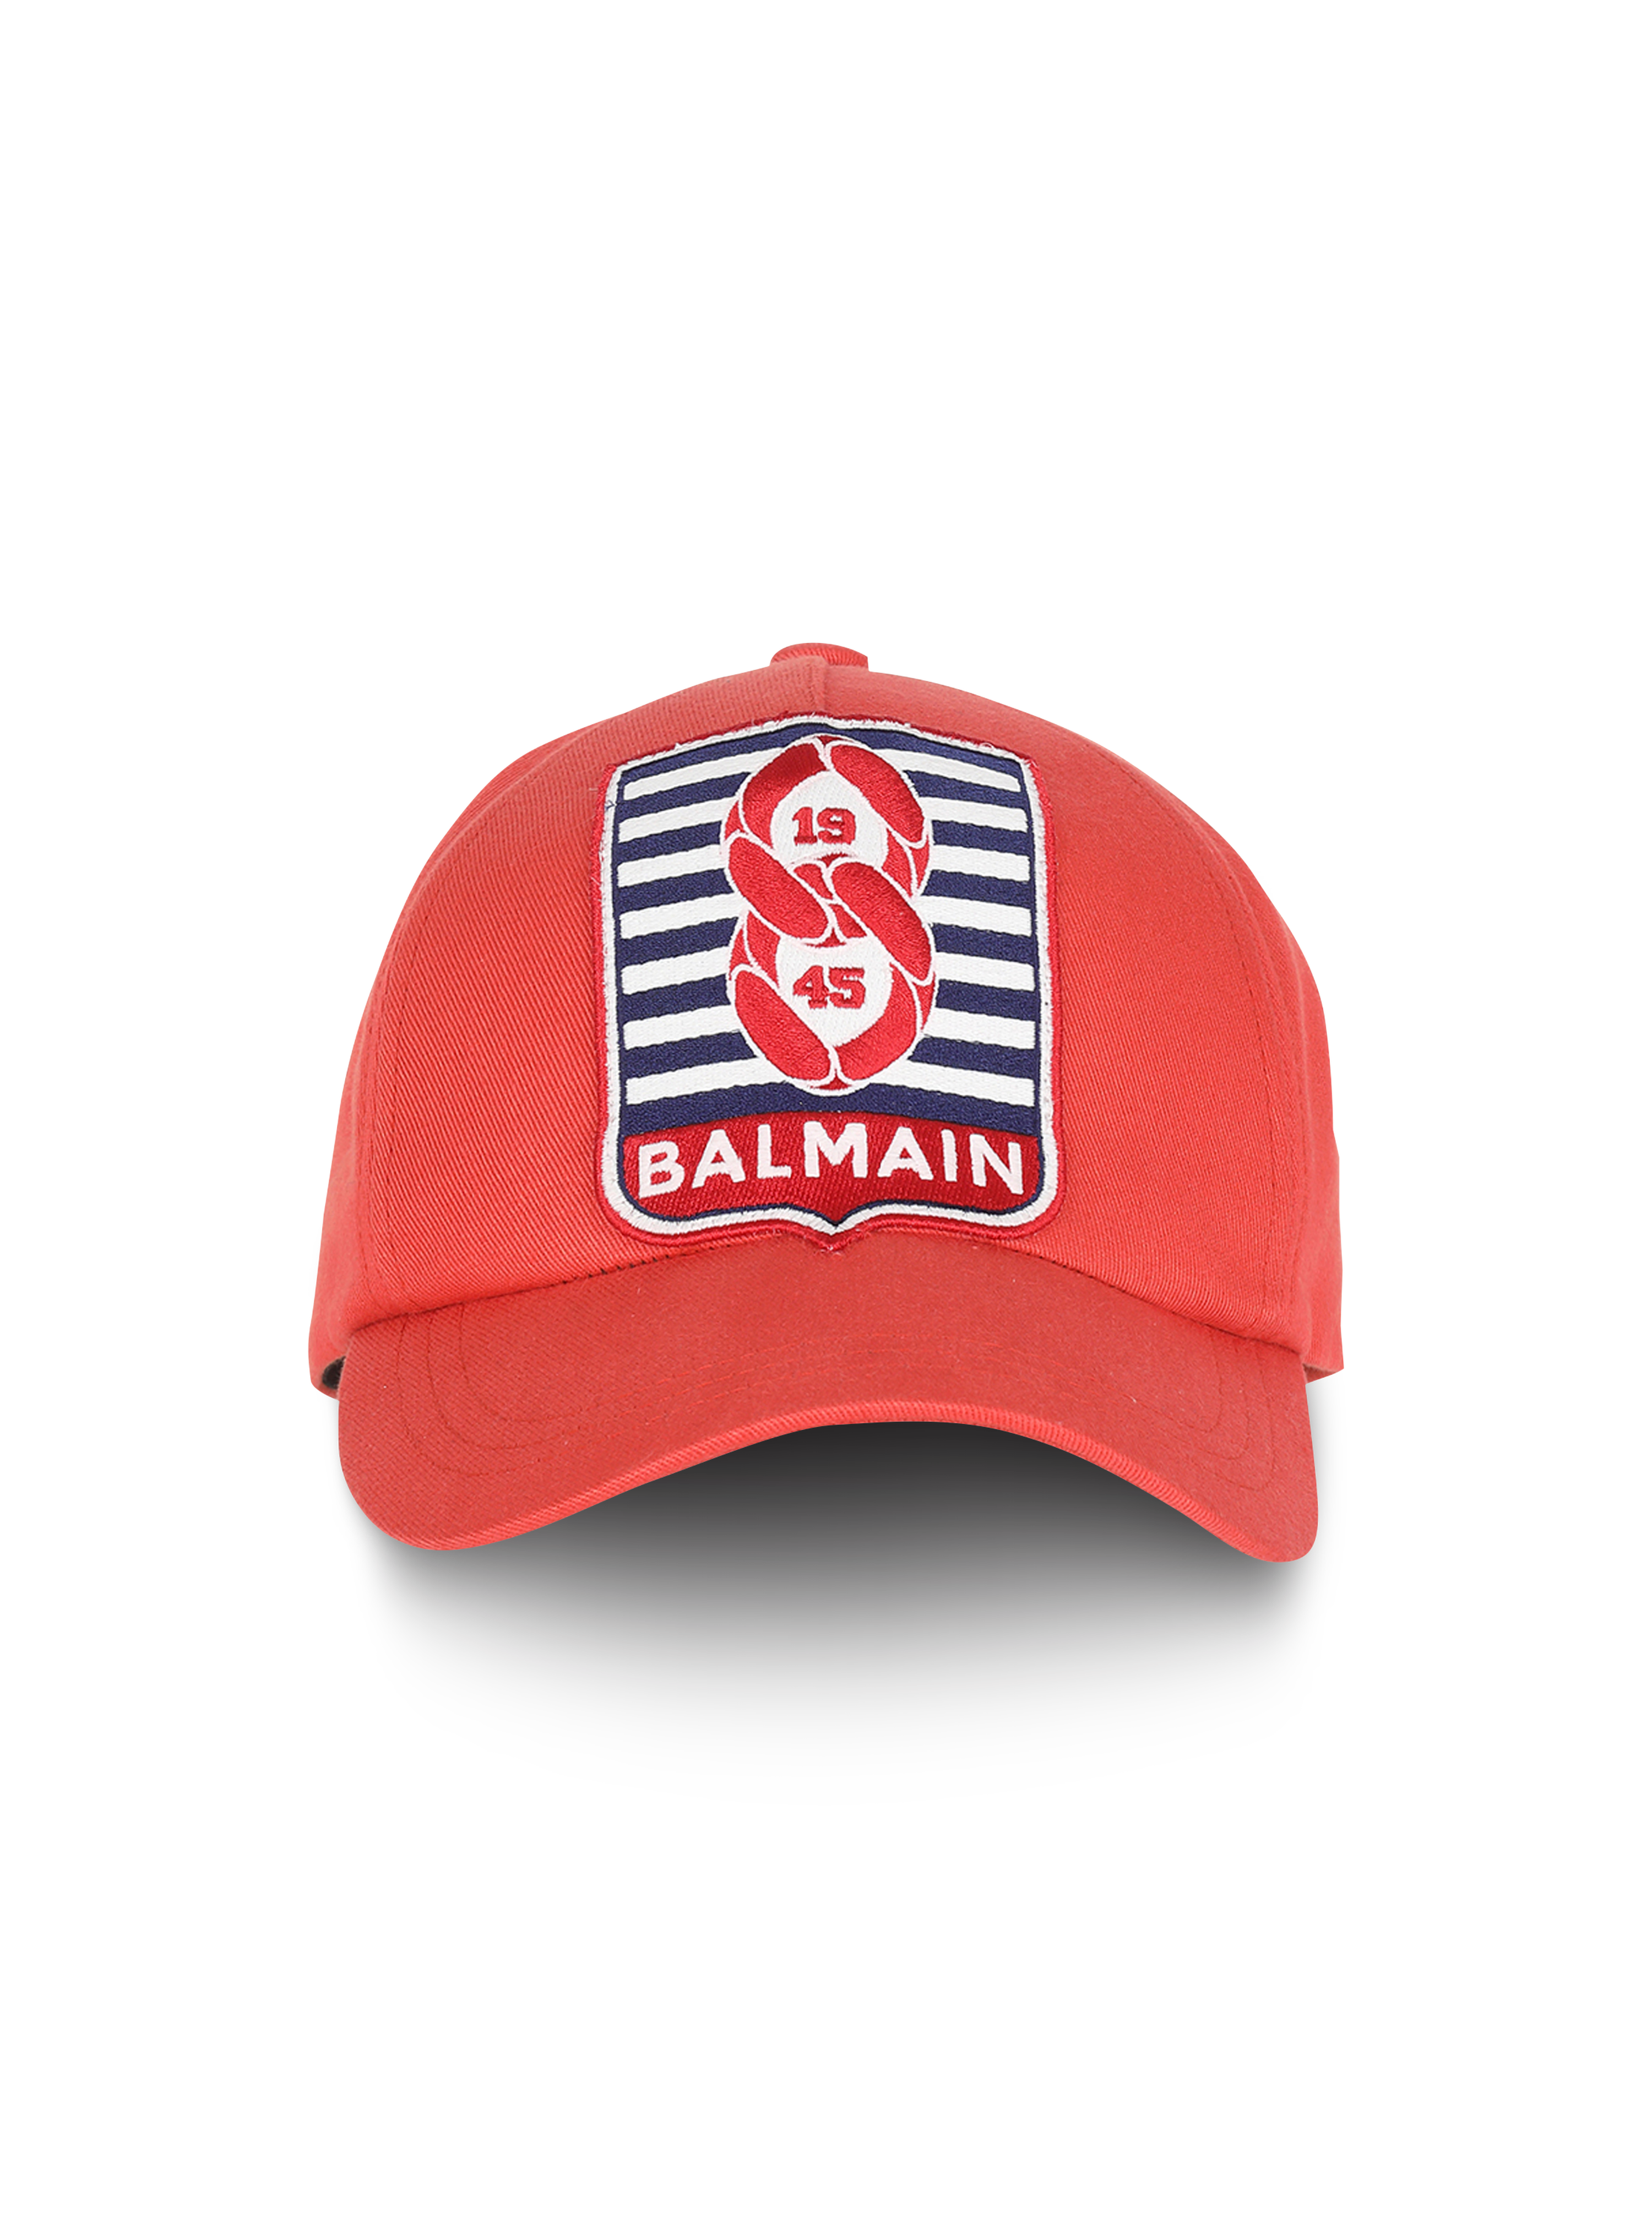 CAPSULE ESTATE - Cappellino in cotone con applicazione monogramma Balmain, rosso